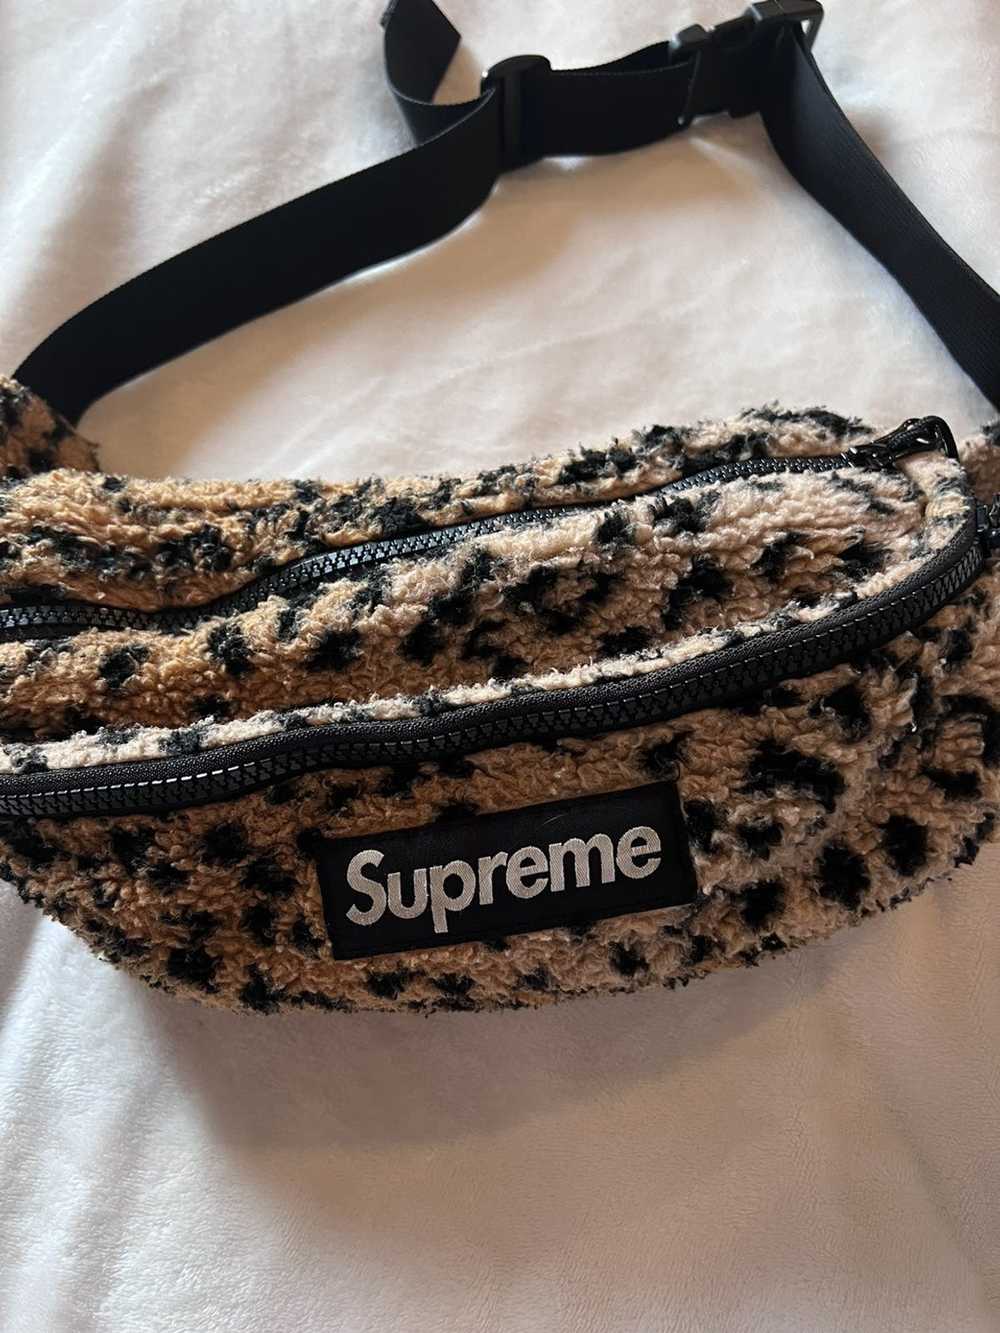 Supreme Supreme Leopard Fanny Pack/Belt Bag - image 2